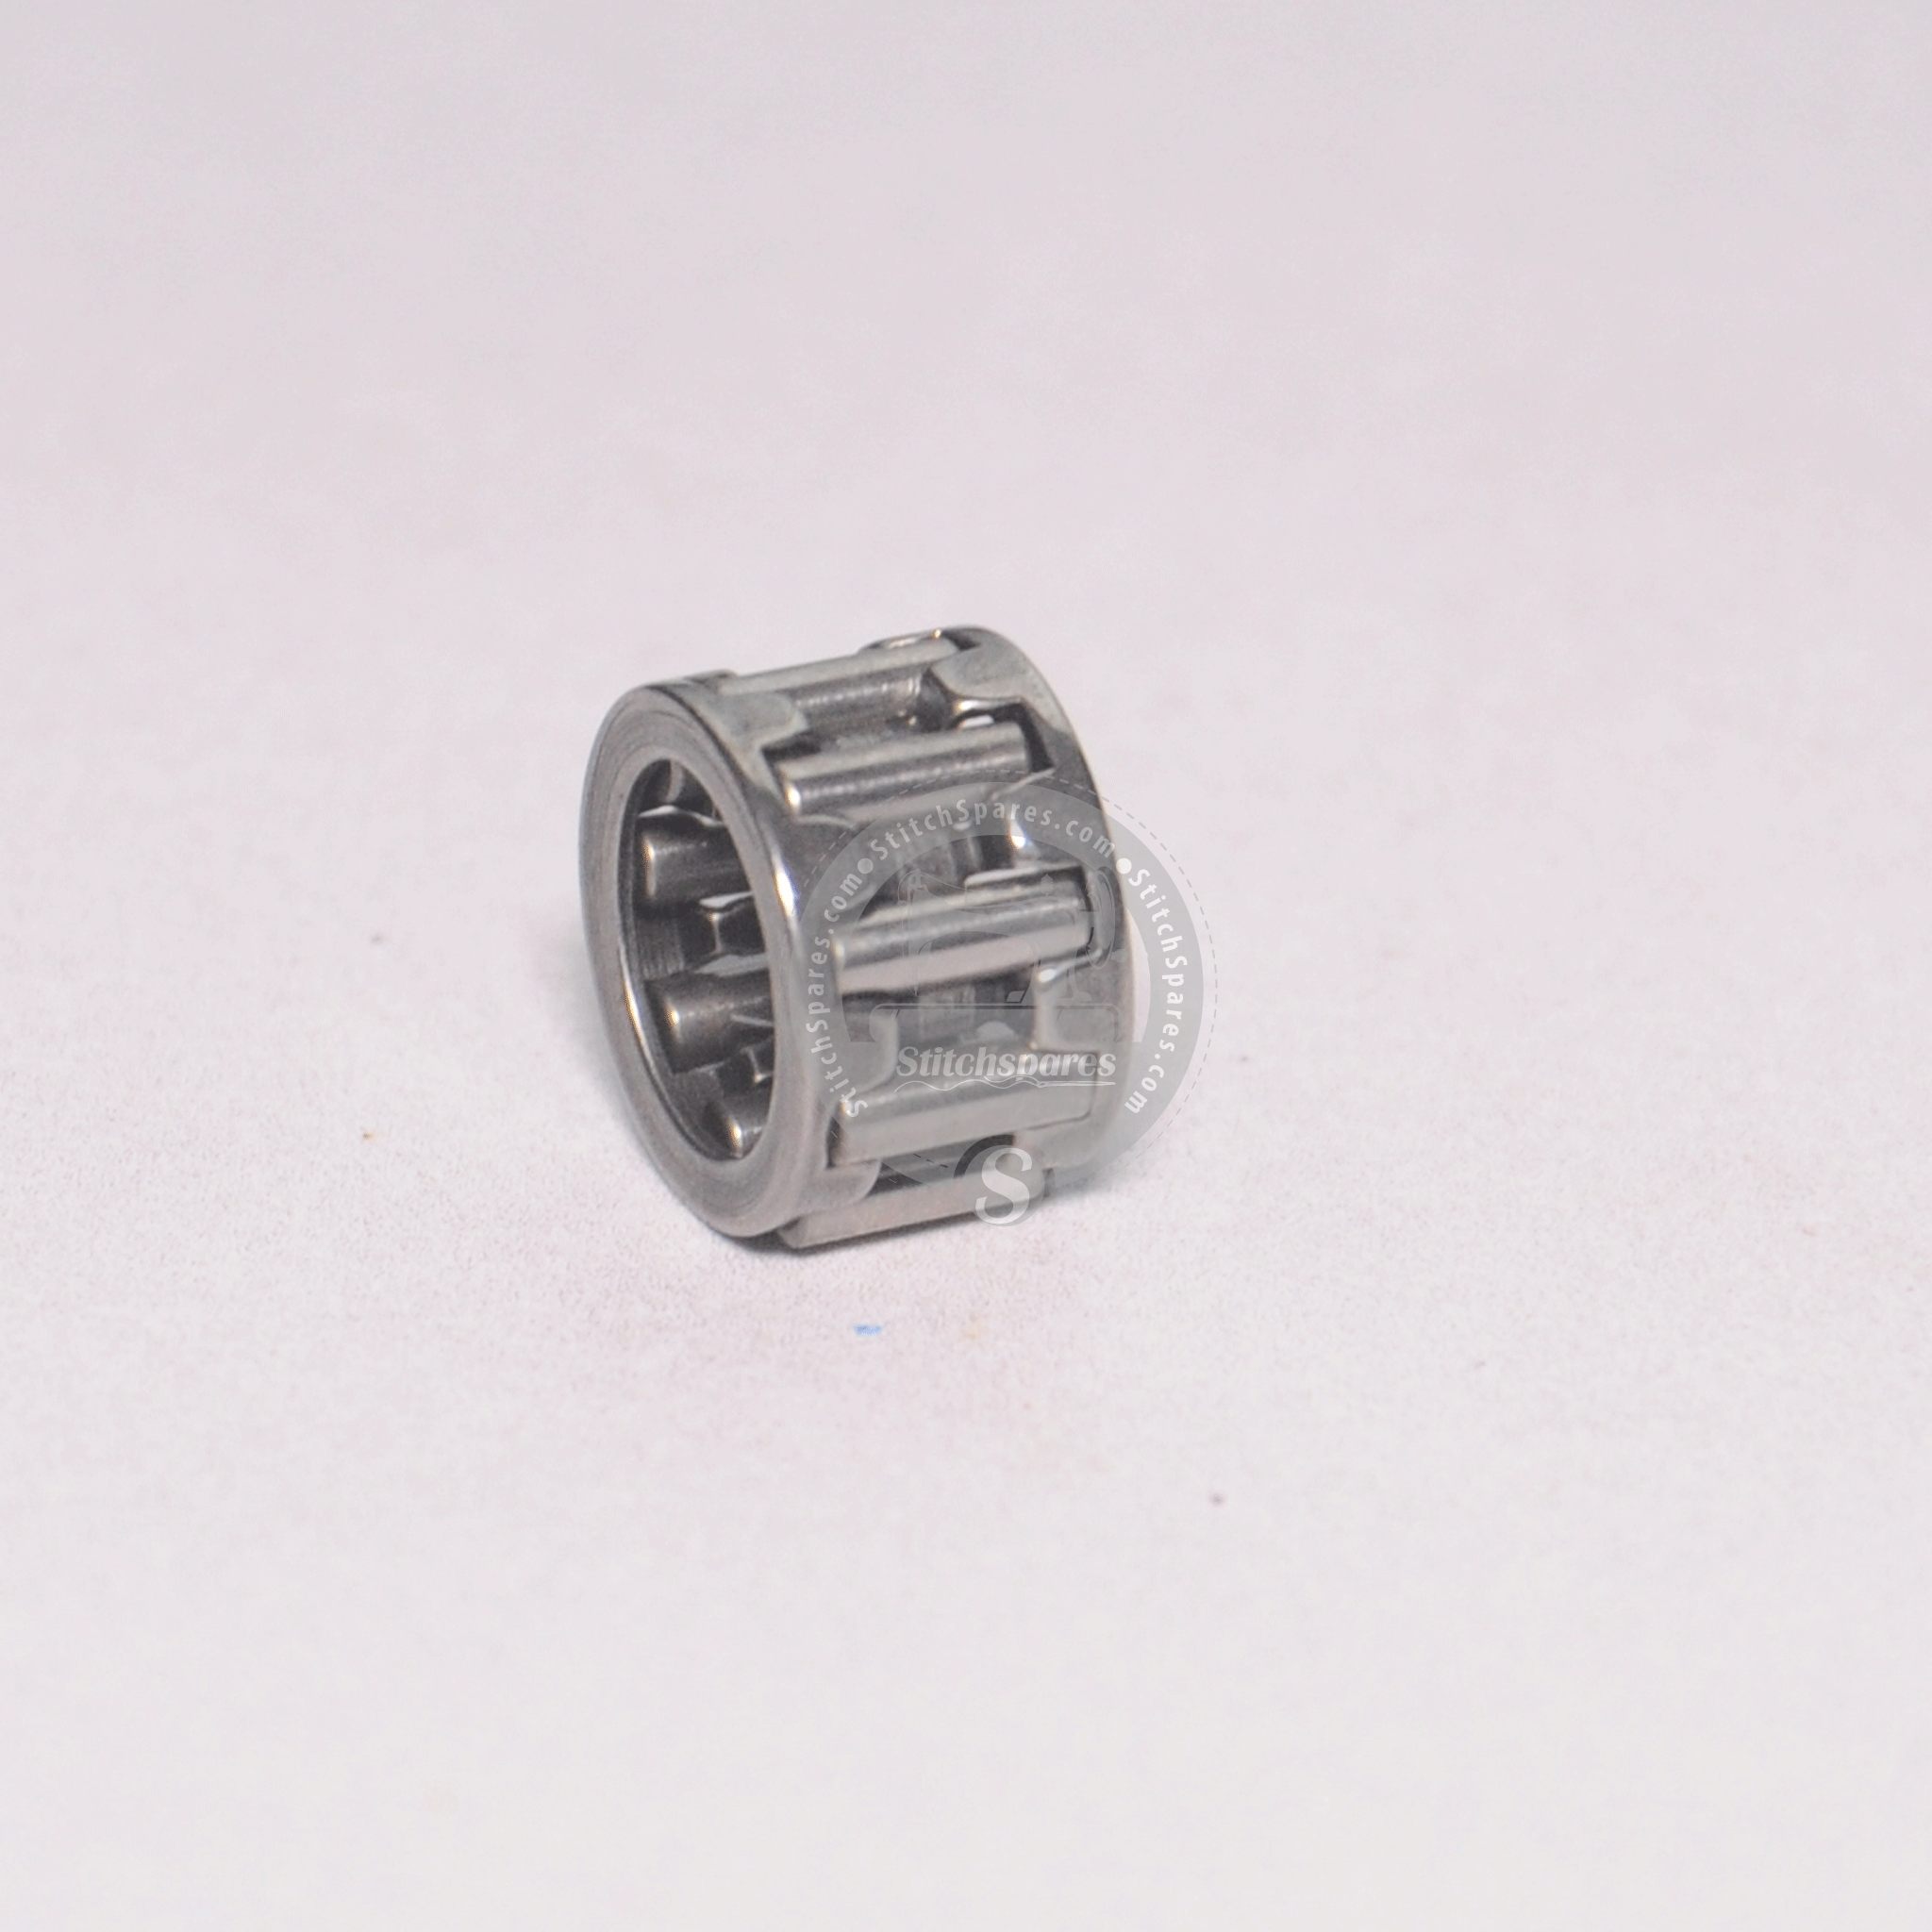 B1905-541-B00 जुकी बटन-होलिंग मशीन असर